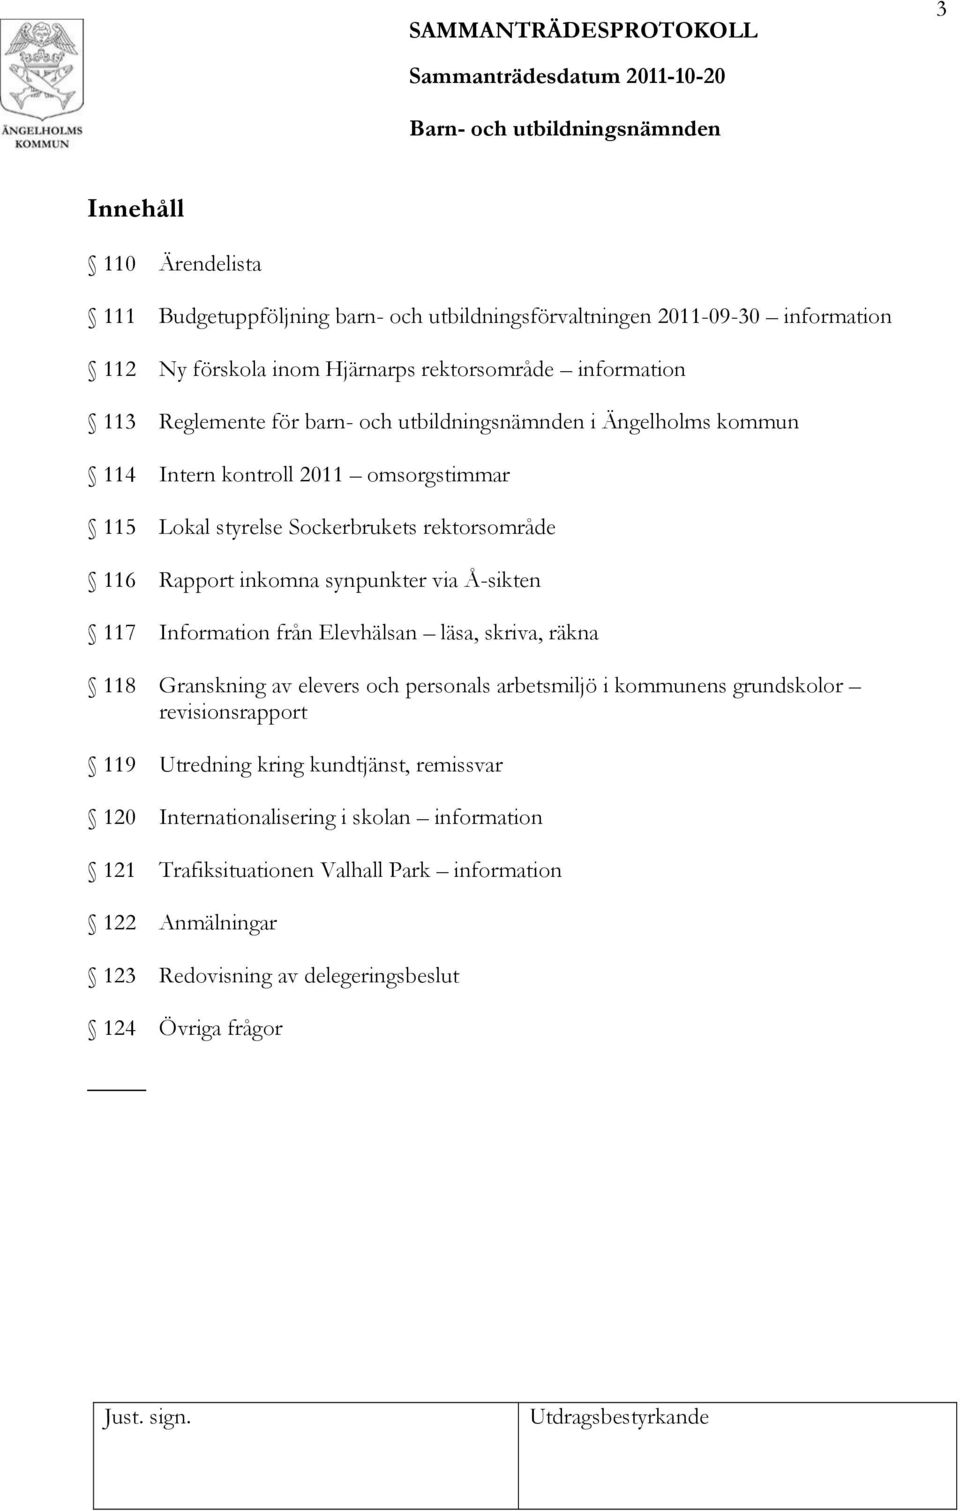 synpunkter via Å-sikten 117 Information från Elevhälsan läsa, skriva, räkna 118 Granskning av elevers och personals arbetsmiljö i kommunens grundskolor revisionsrapport 119